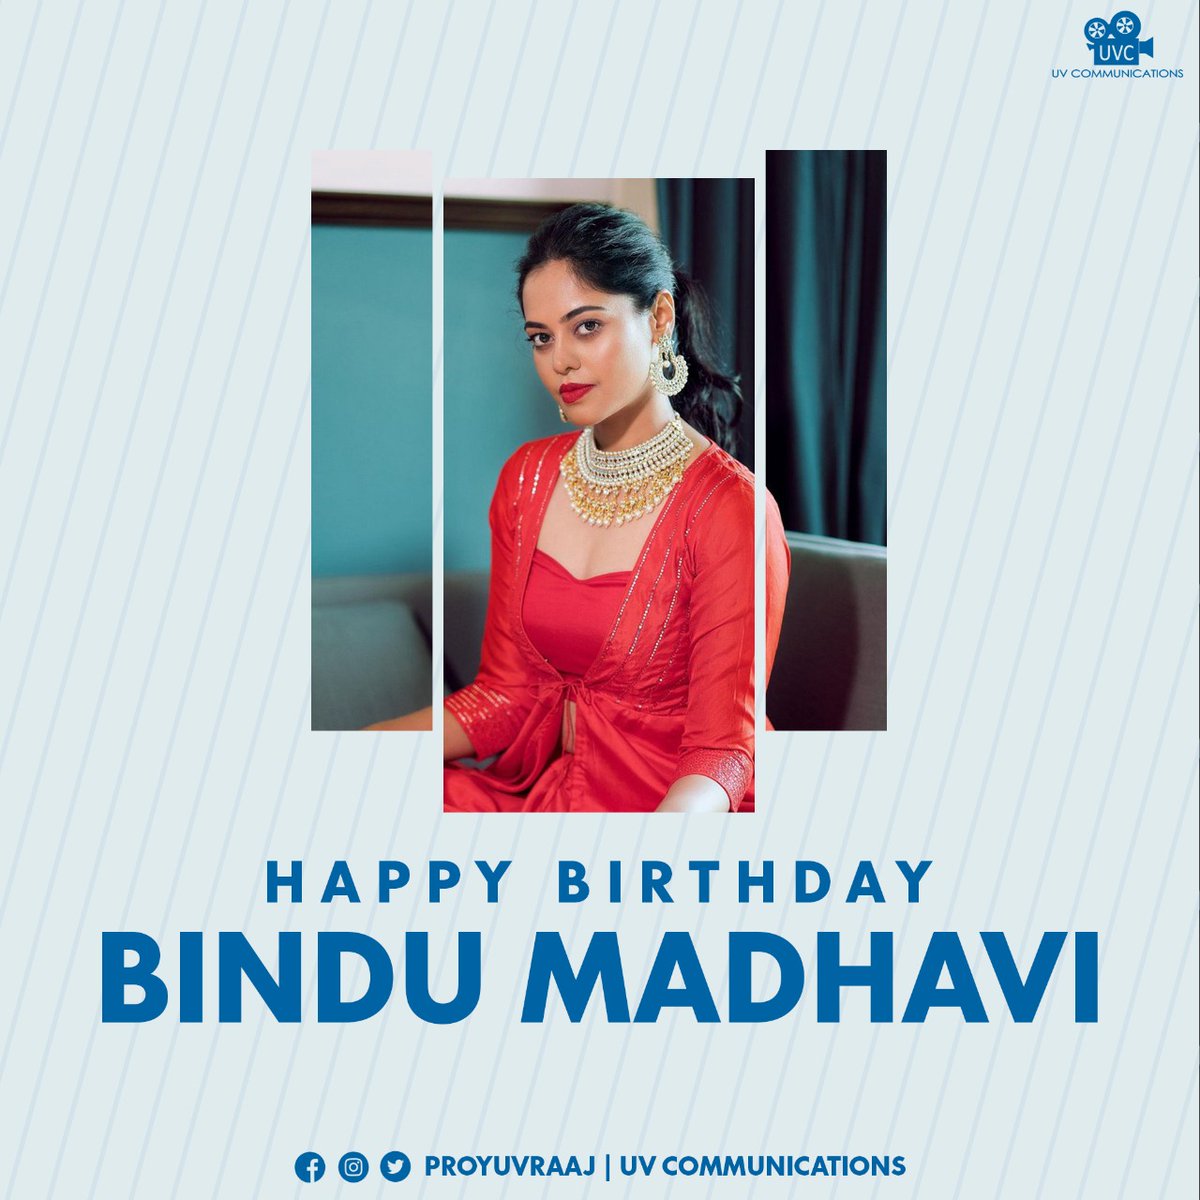 Wishing Actress #BindhuMadhavi mam a very happy birthday ! 🎊

#HBDBinduMadhavi